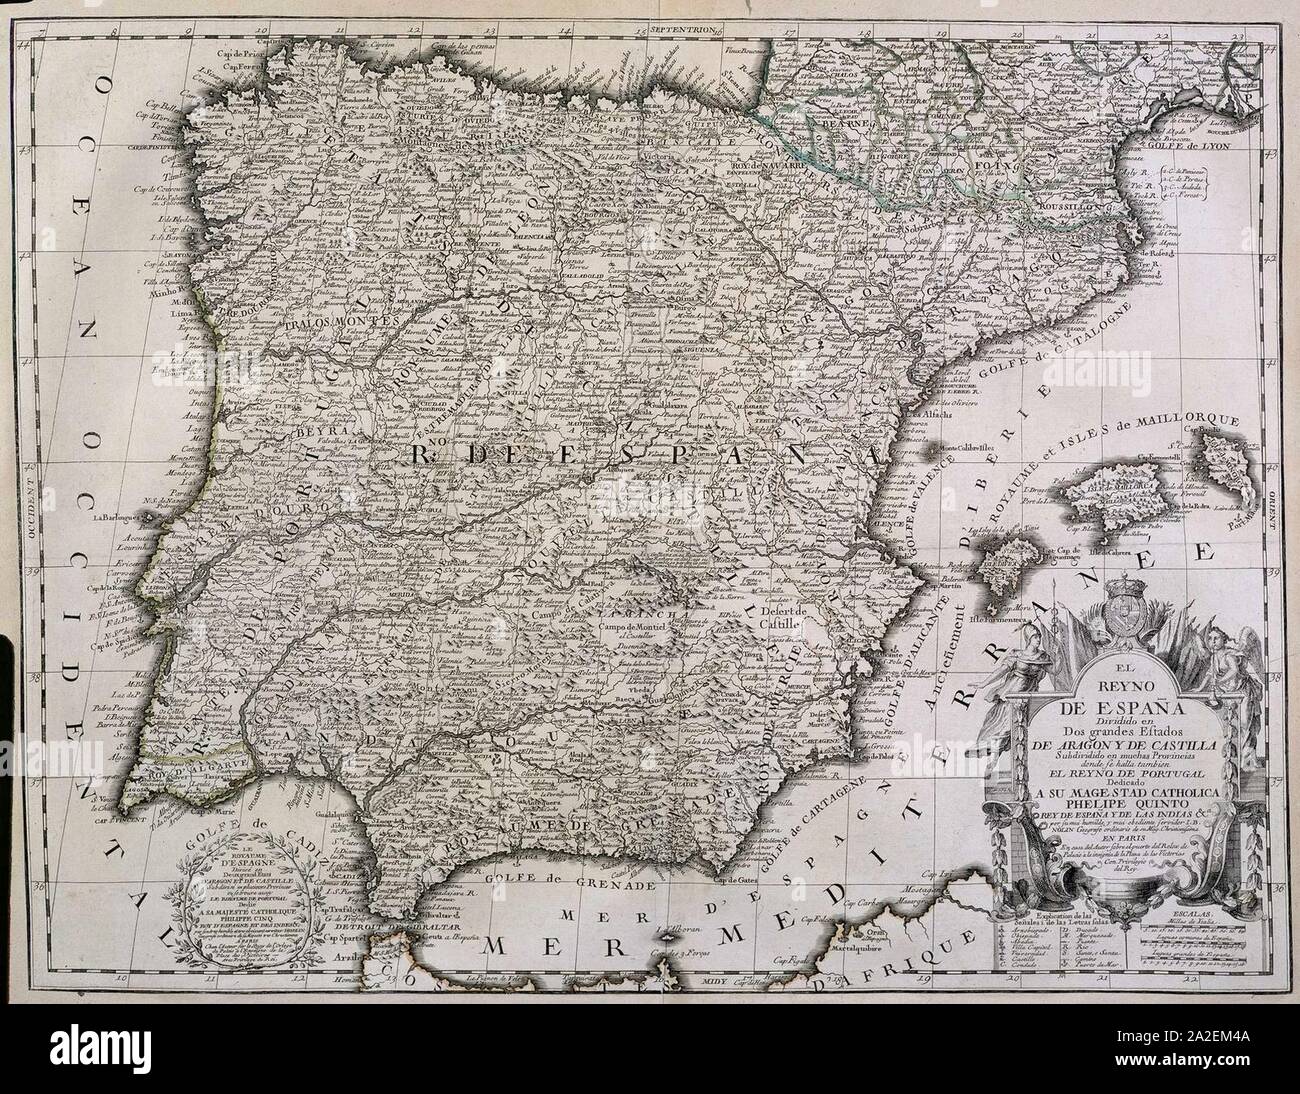 El Reyno de España dividido en dos grandes Estados de Aragón y de Castilla. Stock Photo